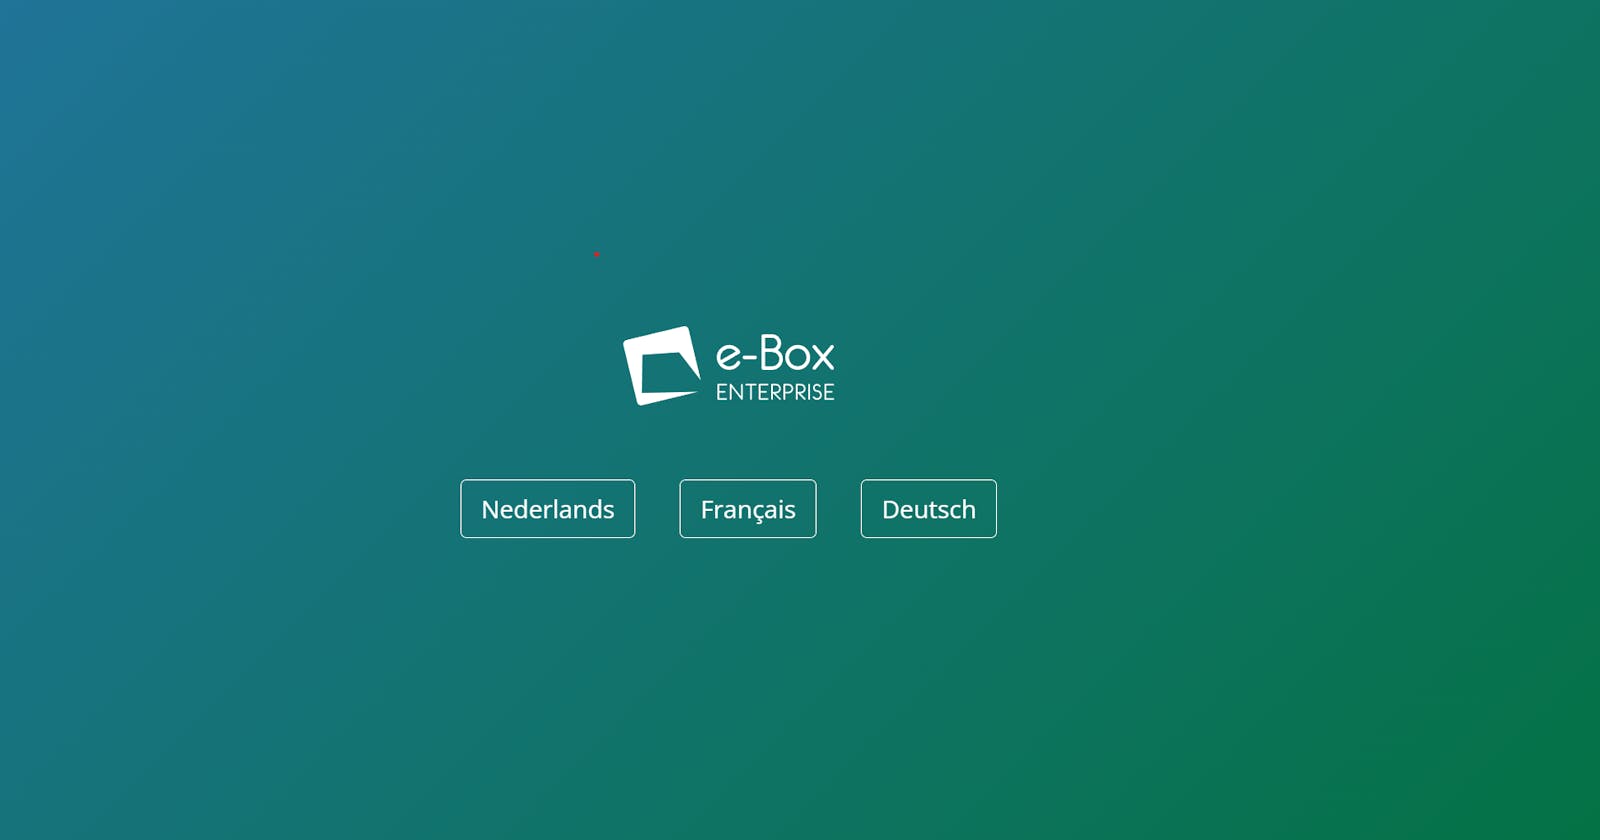 Welcome to Belgium: e-Box Enterprise